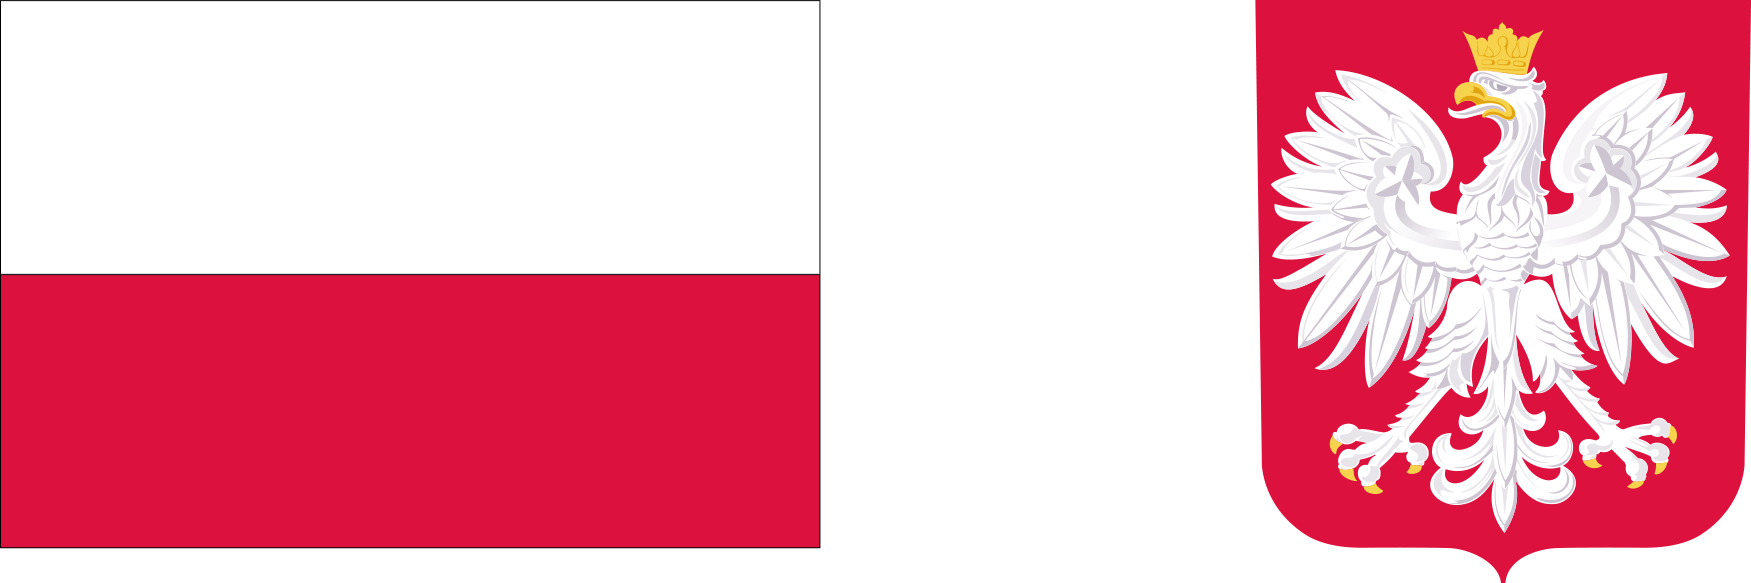 Biało-czerwona flaga, obok godło Rzeczpospolitej Polskiej.